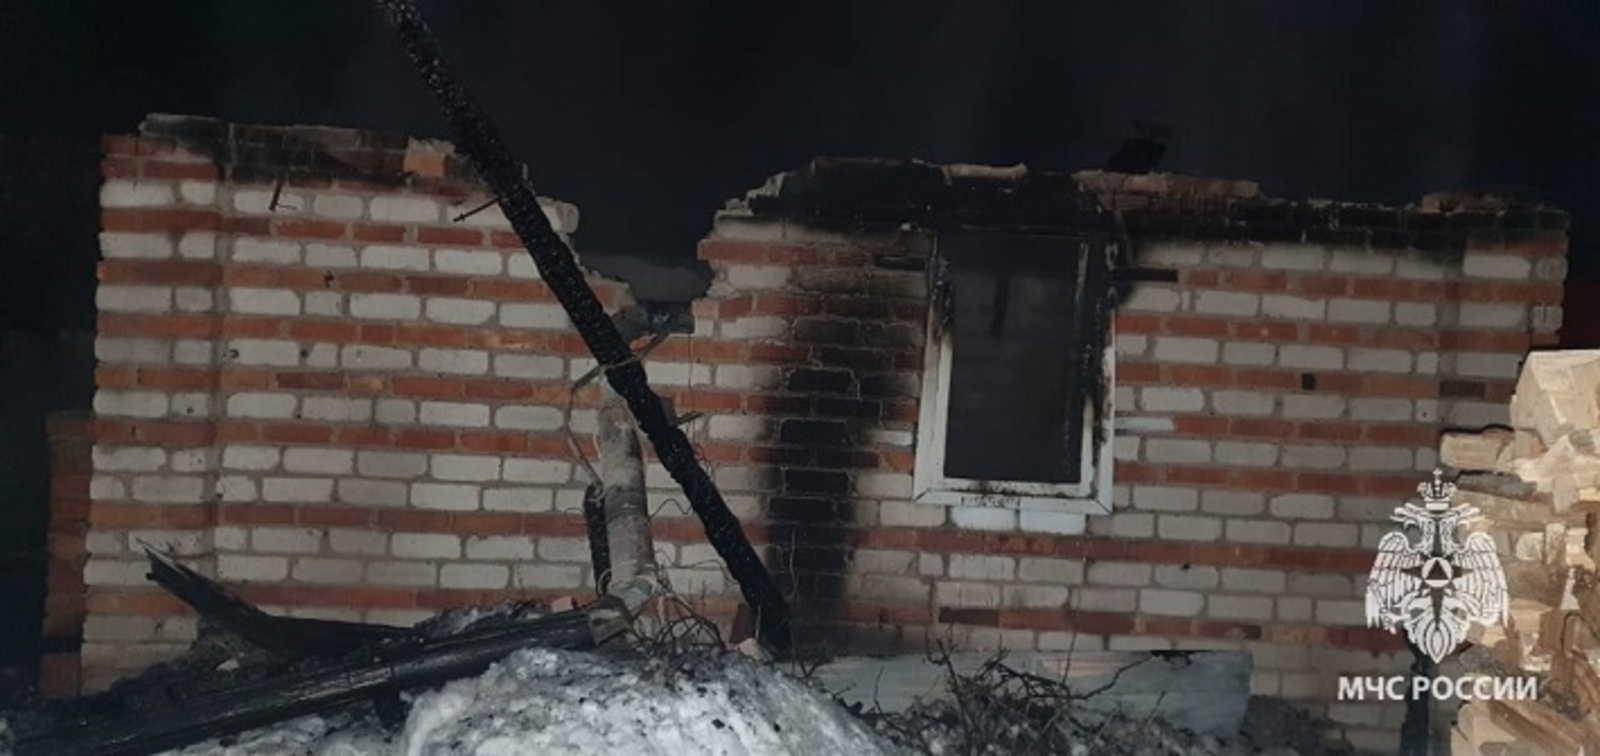 Минувшая ночь в Башкирии вновь не обошлась без пожара с гибелью человека